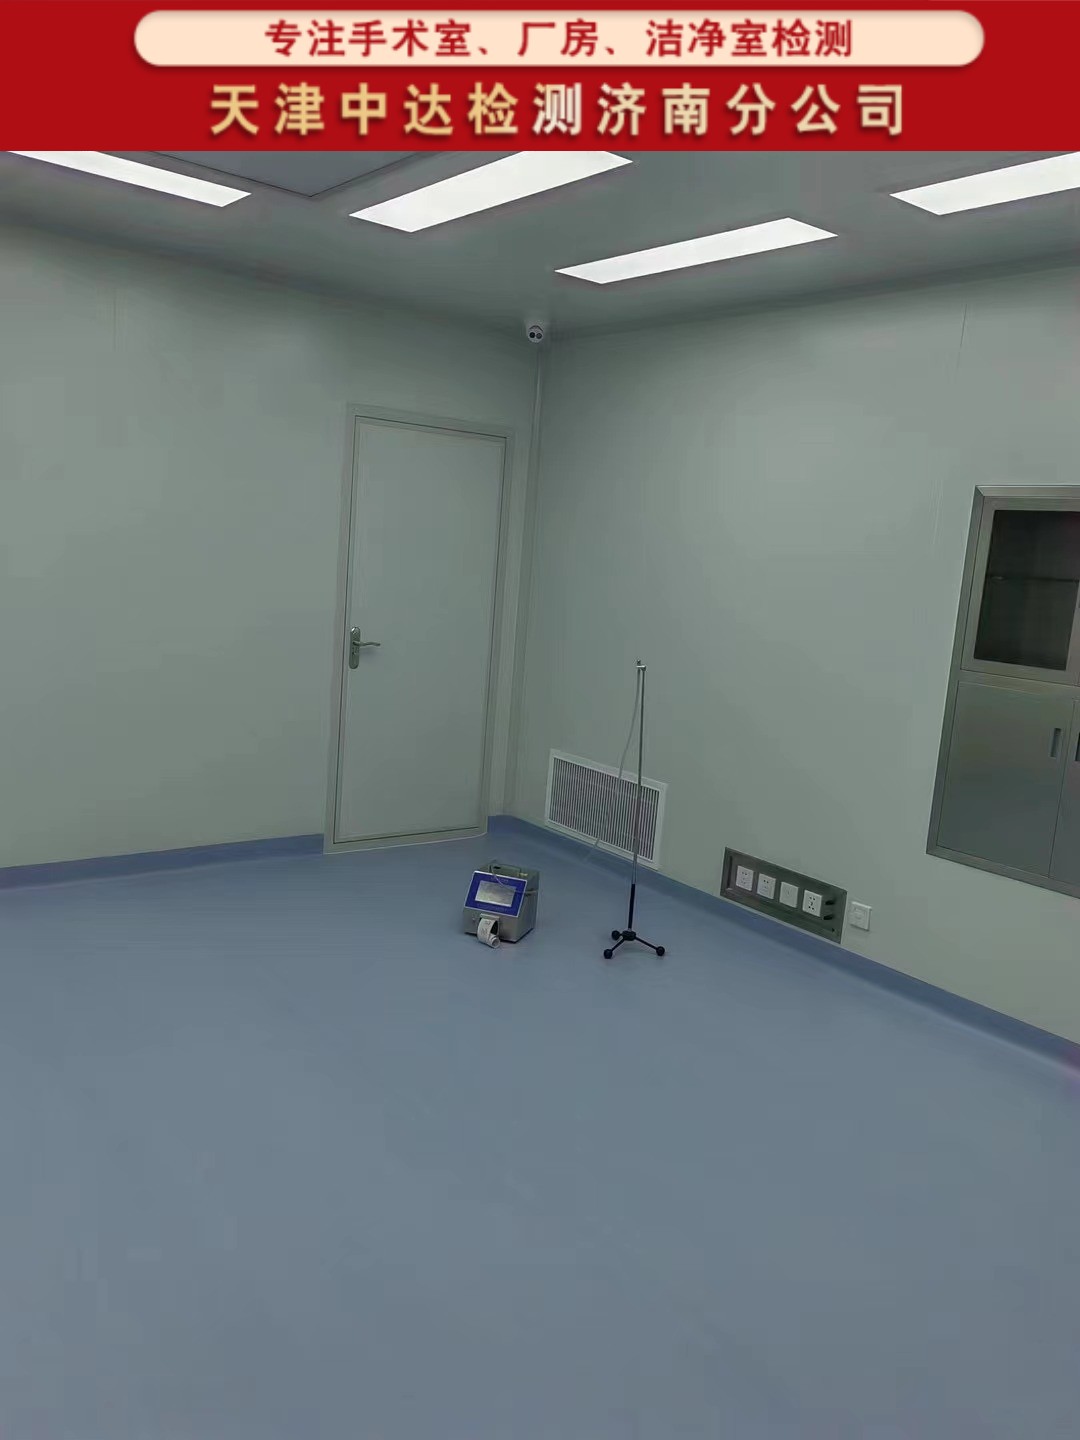 青岛西海岸新区医院洁净手术室空气质量检测第三方-天津中达检测济南分公司